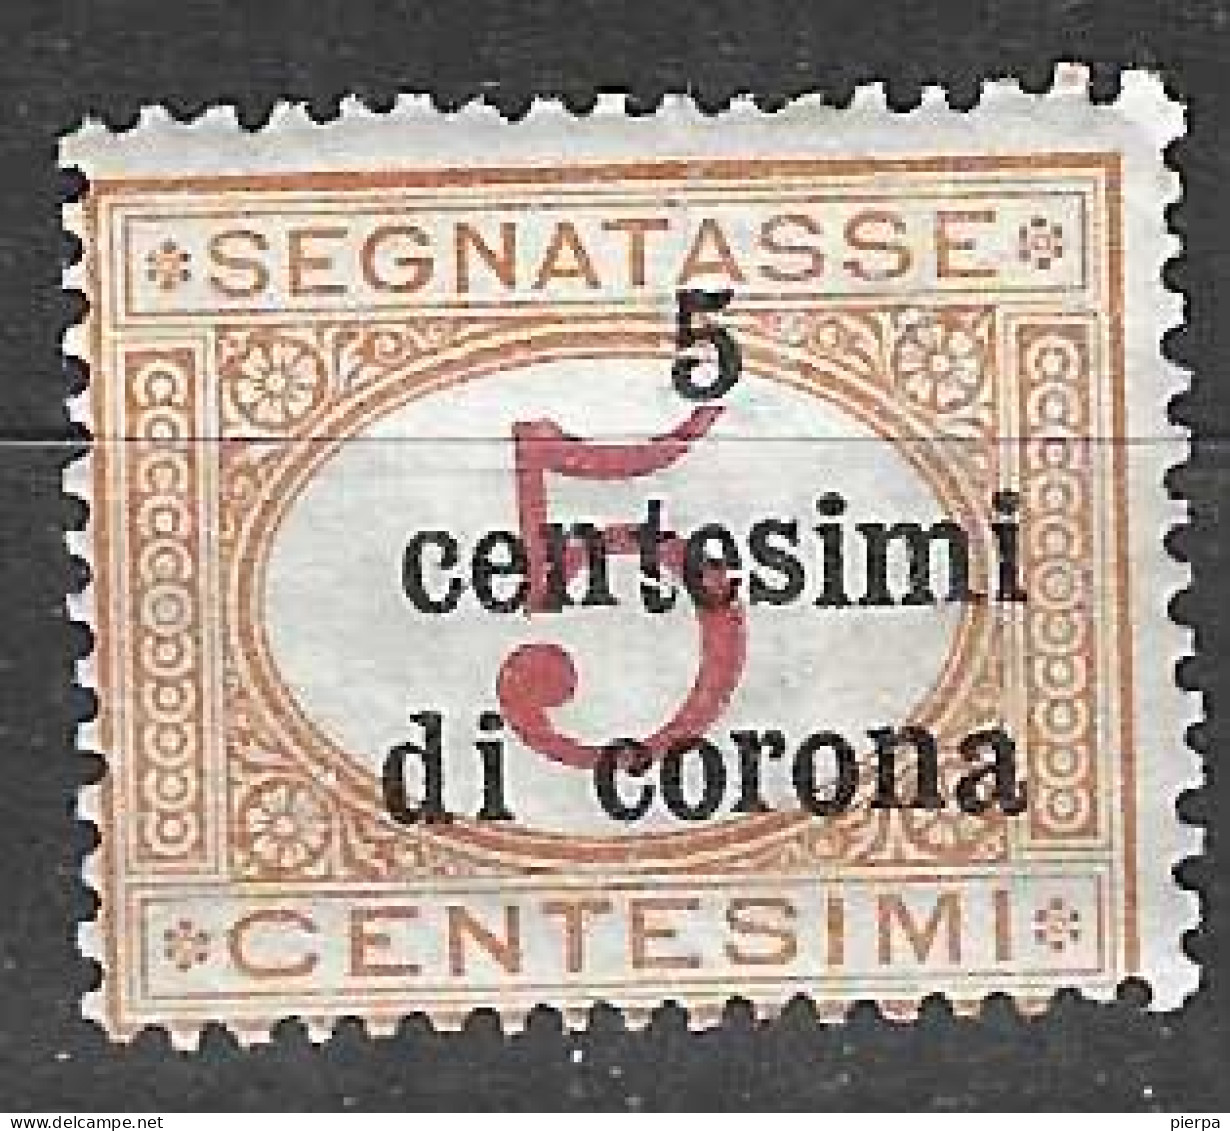 ITALIA - OCC. TRENTO E TRIESTE - 1919 - SEGNATASSE 5C. DI CORONA/5C. - NUOVO MNH**.  (YVERT TX1 - MICHEL PM1 - SS SG 1) - Trentino & Triest